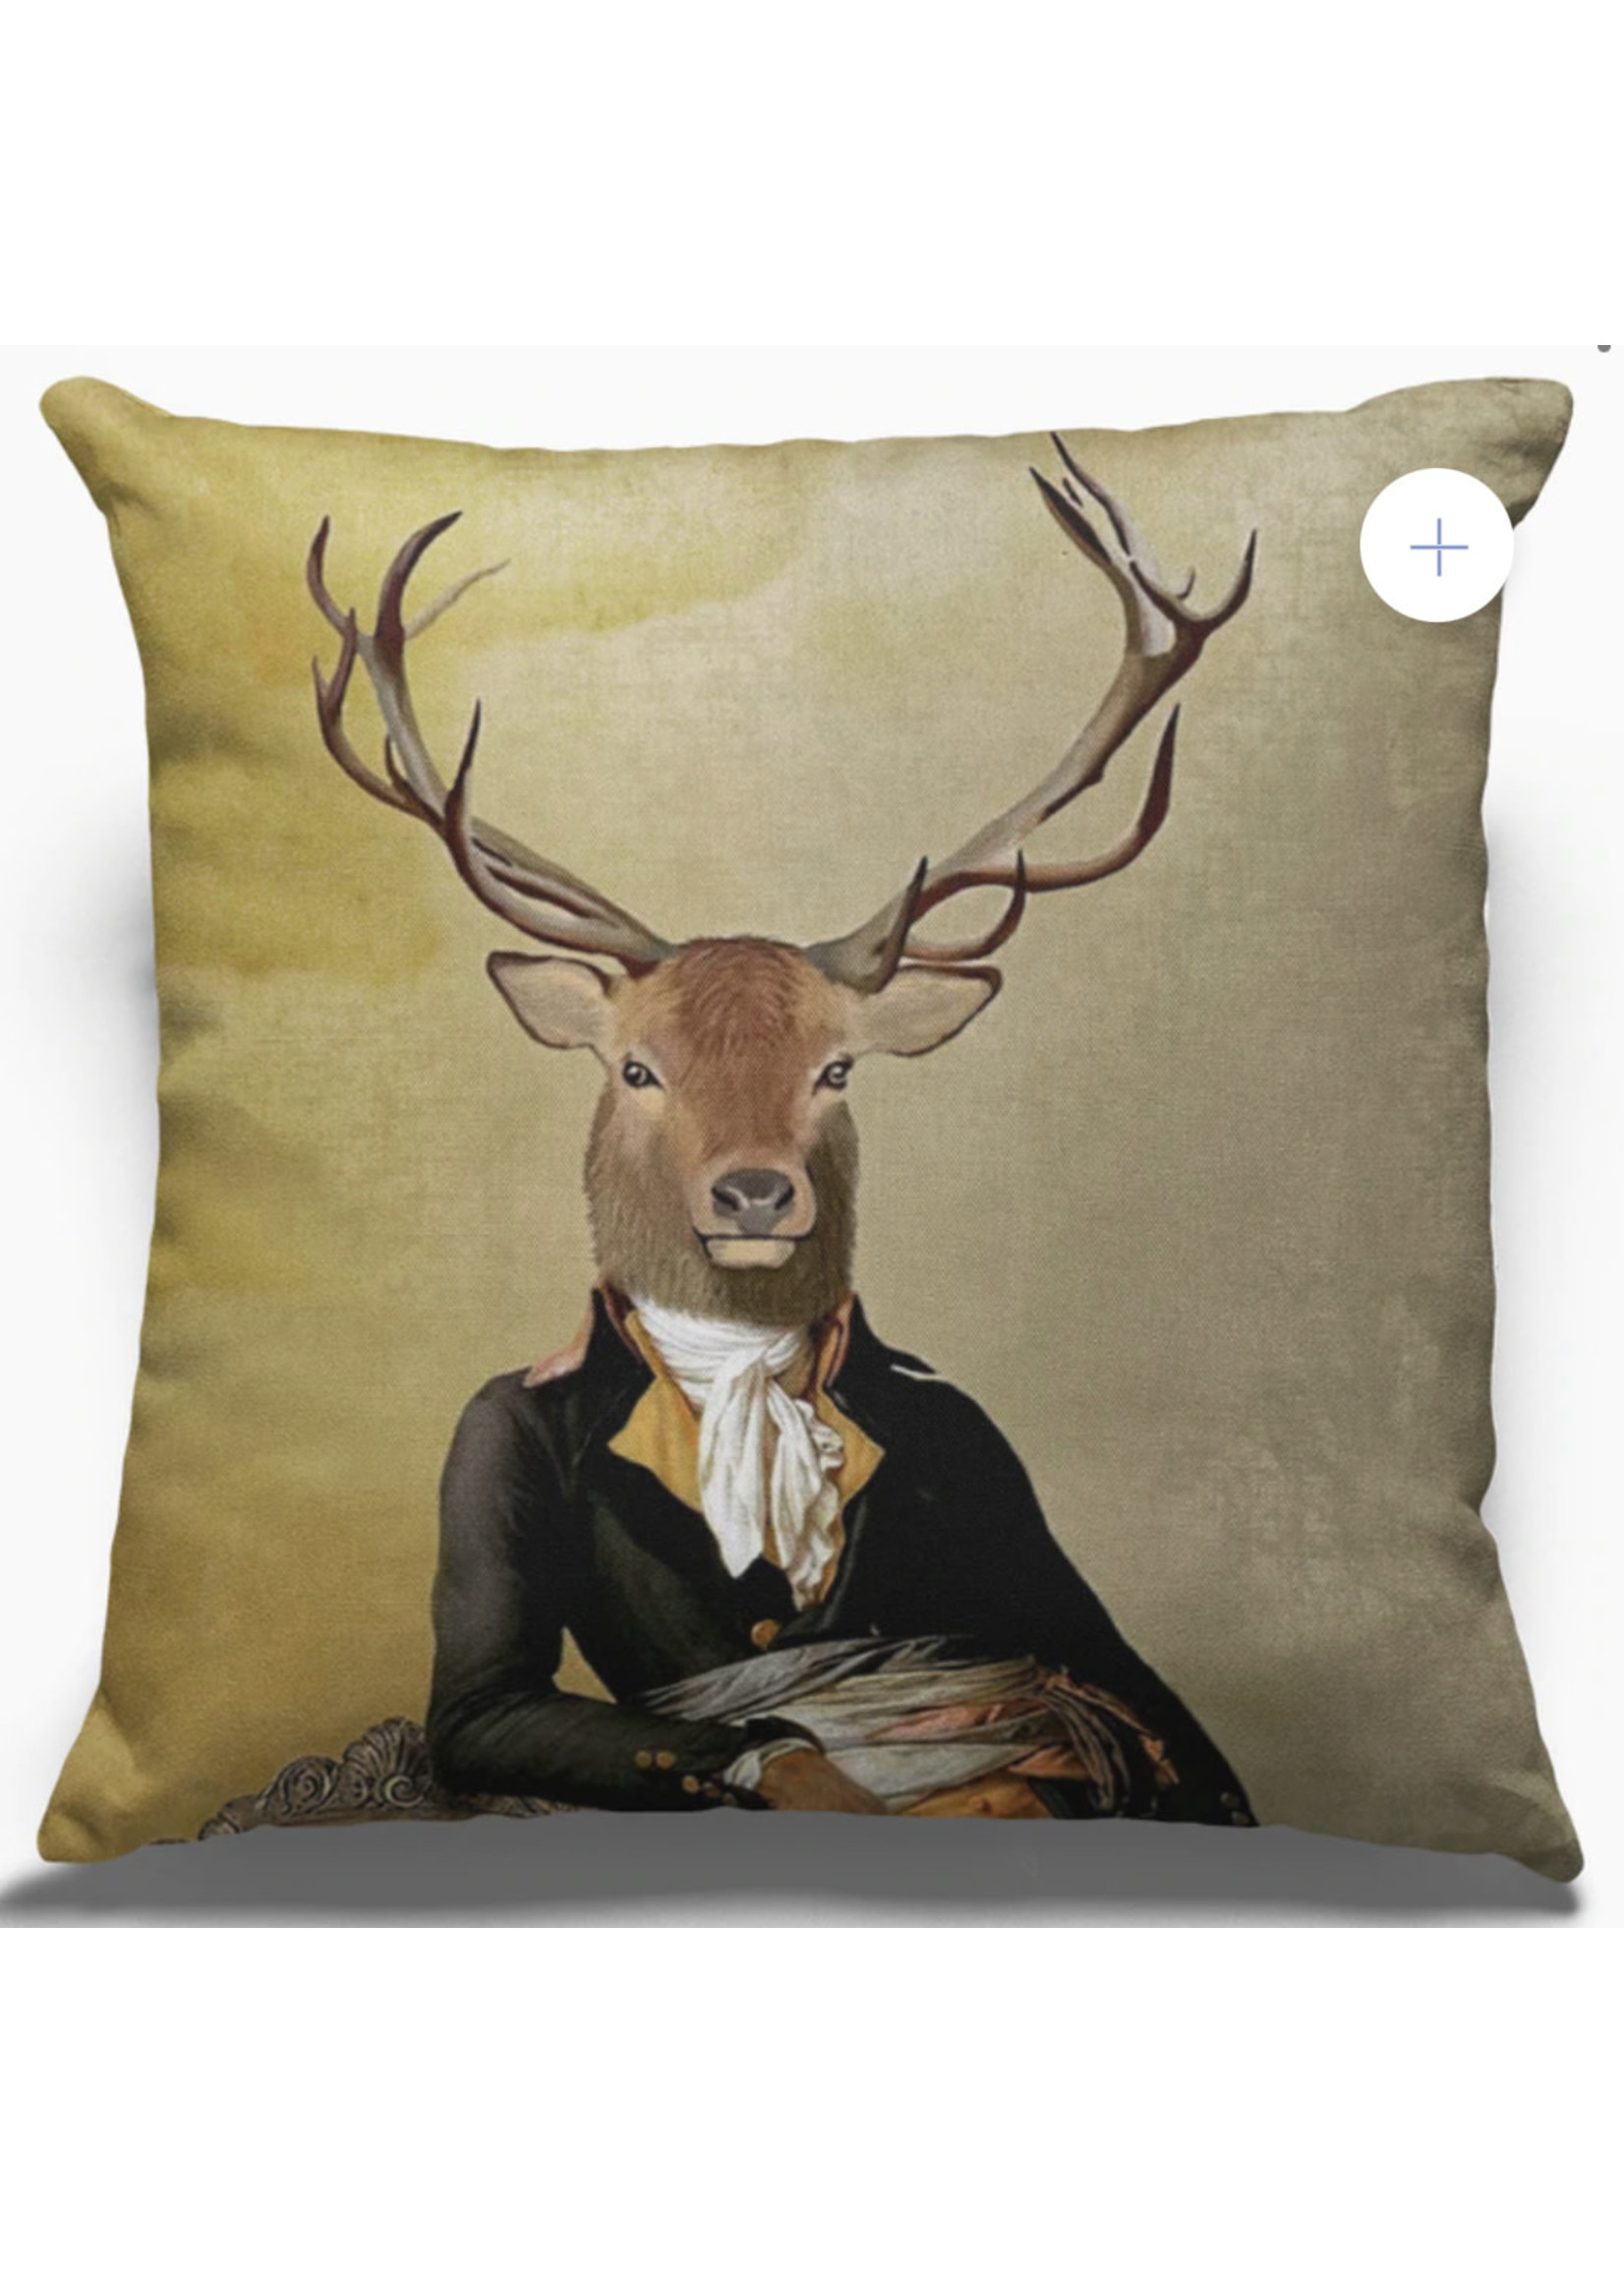 Moderny Sovereign Series Pillows - Caribou